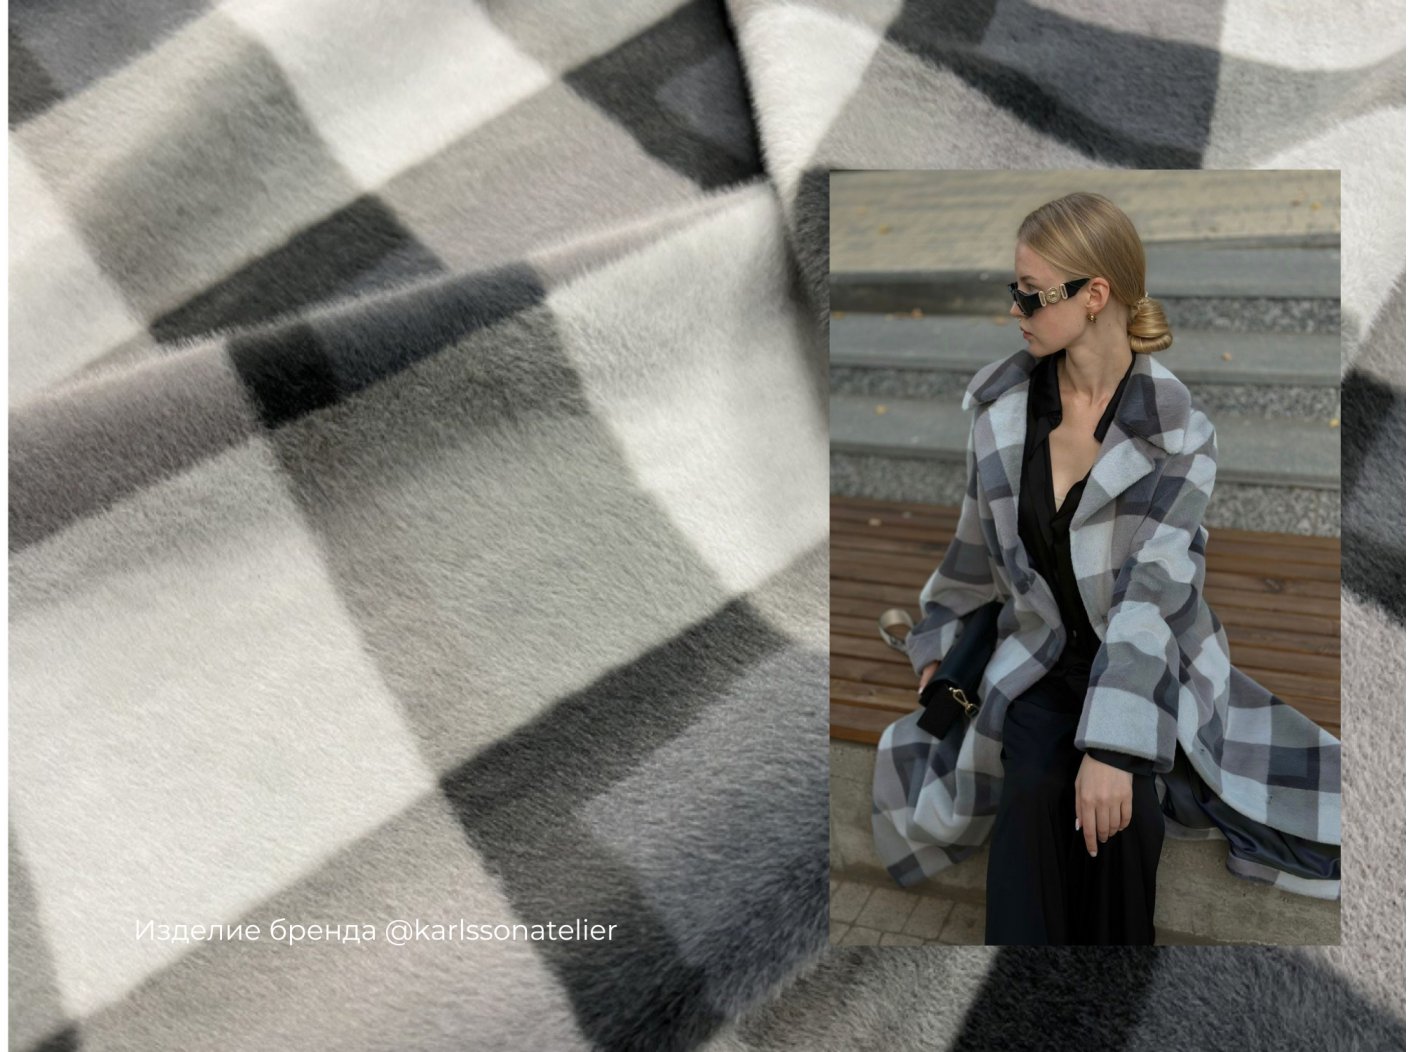 Пальтовая ткань Mirofox коллекции SCOTLAND, с основой под велюр / цвет базы - 50 Gray